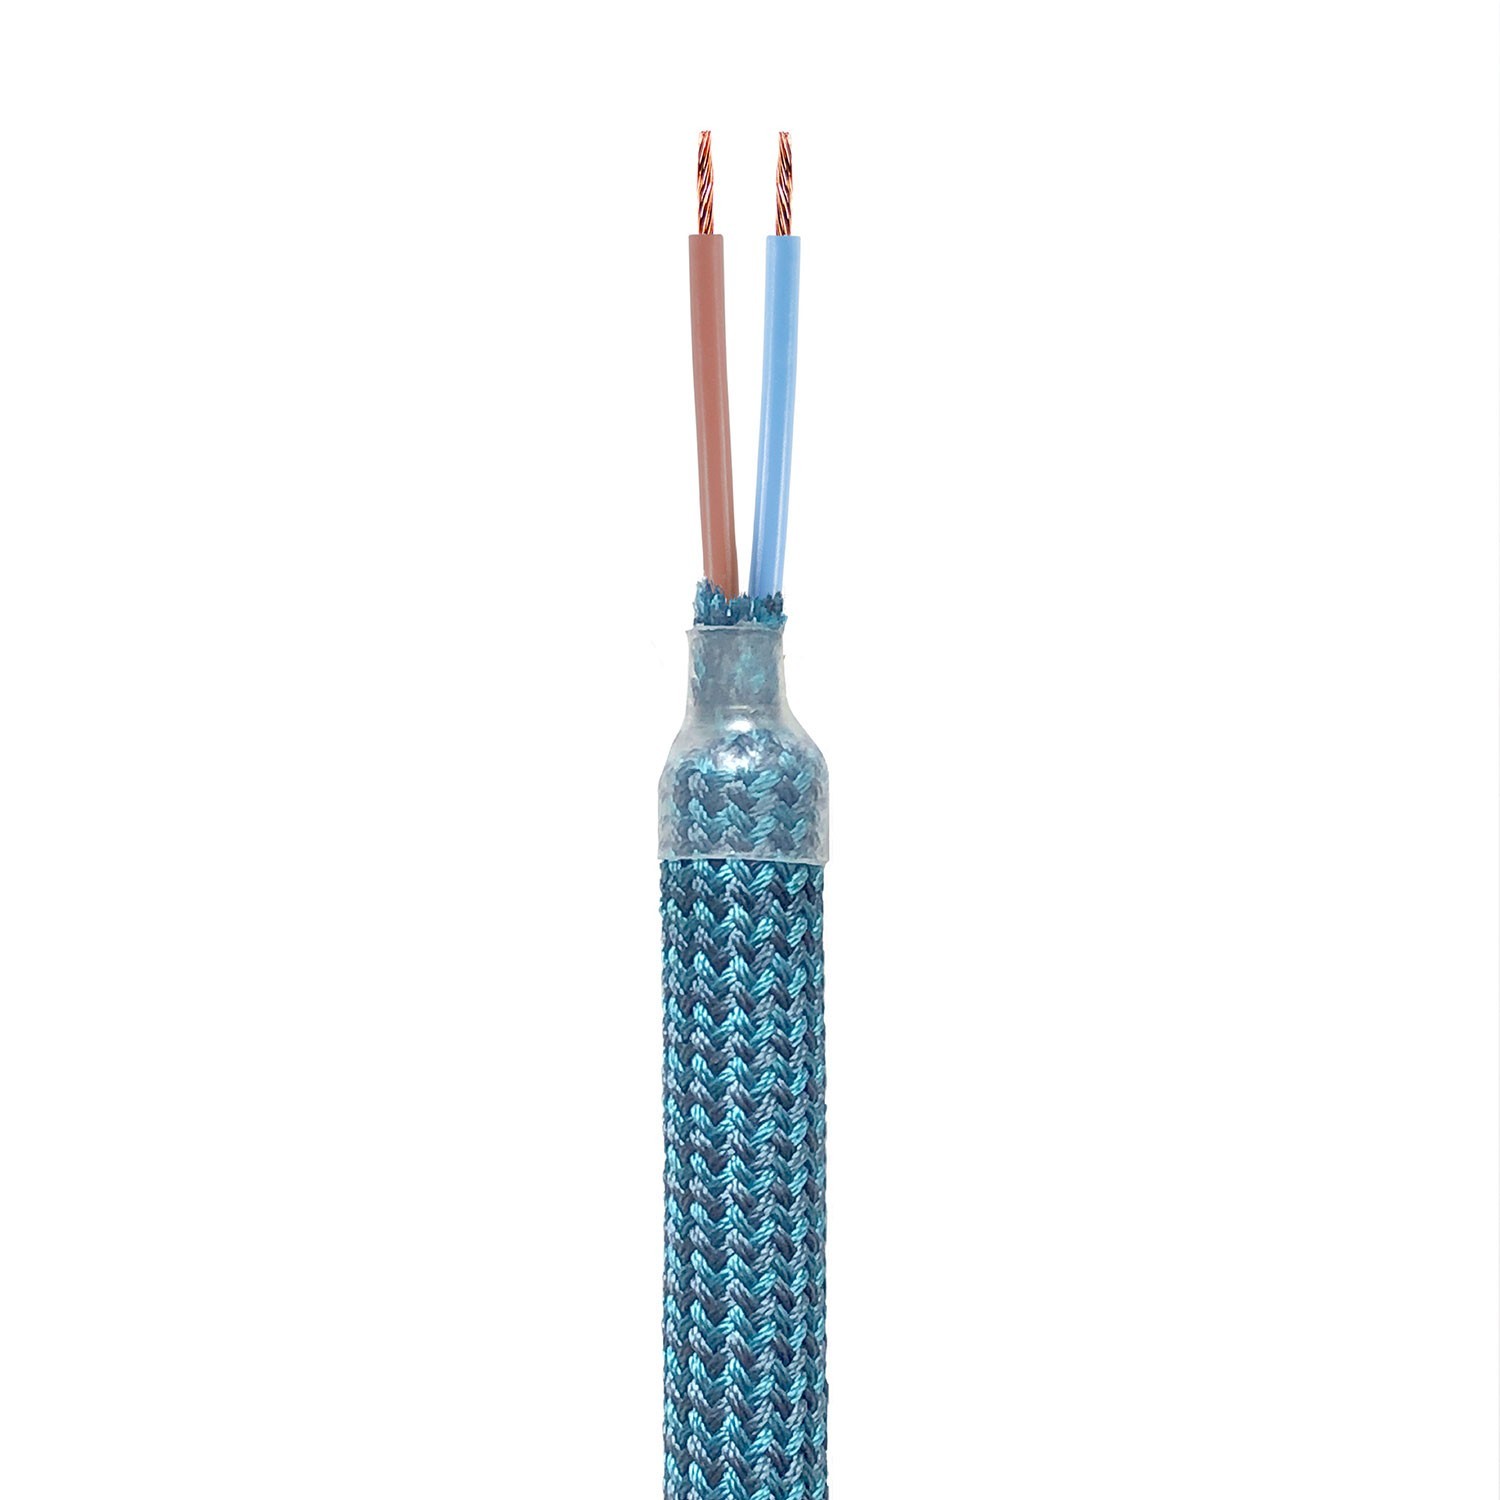 Kit Creative Flex tubo flexible revestido de tejido petróleo RM78 con terminales metálicos